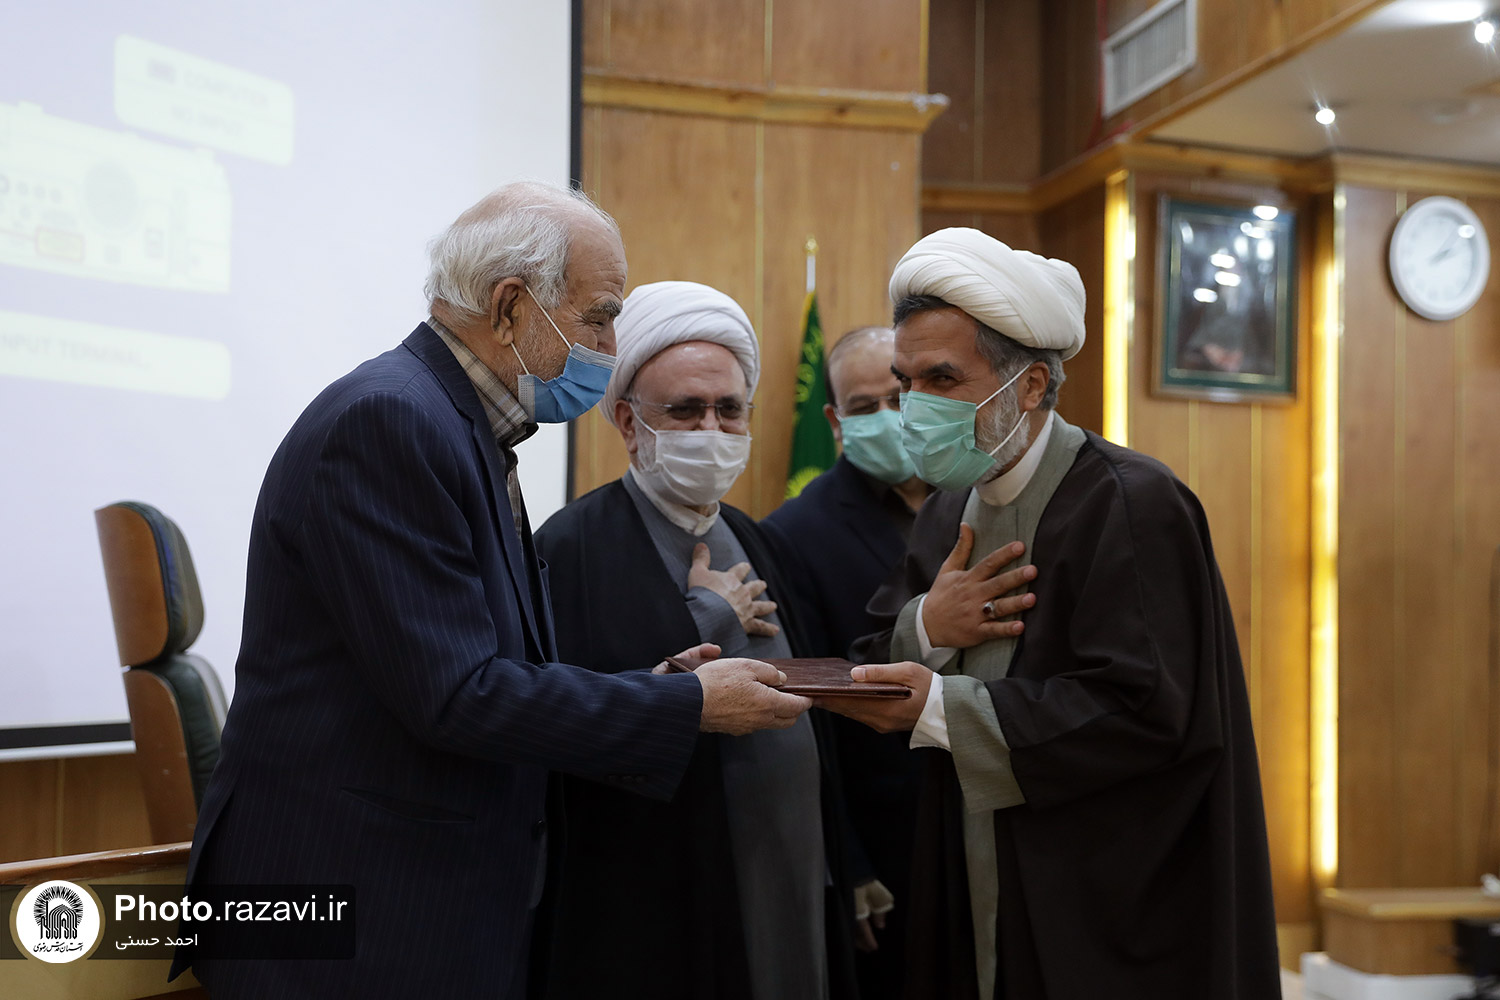 مراسم معارفه مدیر موسسه فرهنگی و بقاع متبرکه و اماکن مذهبی در مشهد مقدس برگزار شد